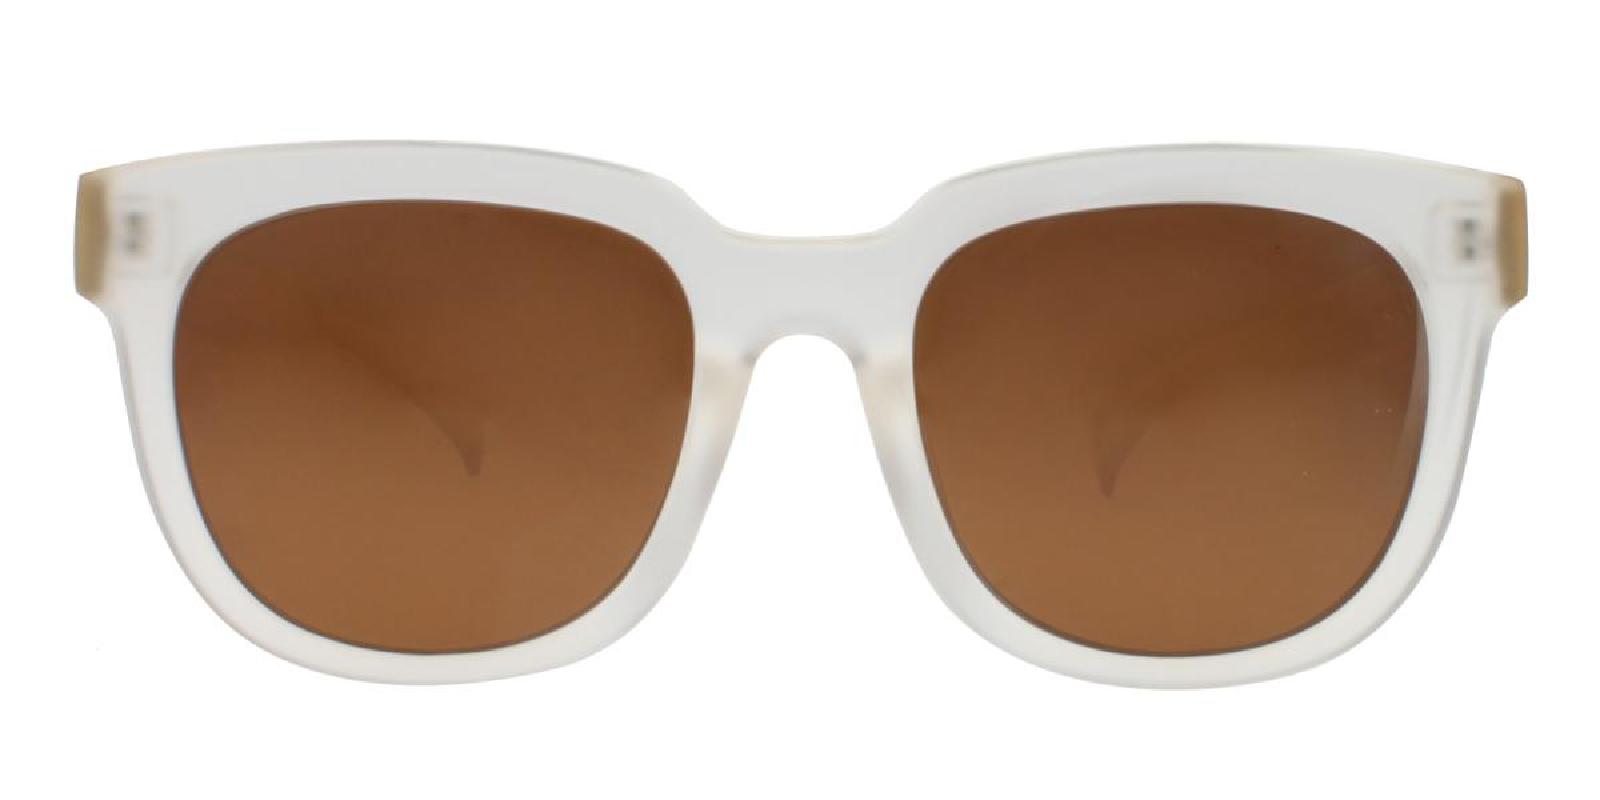 Pujis-Translucent-Square-TR-Sunglasses-detail